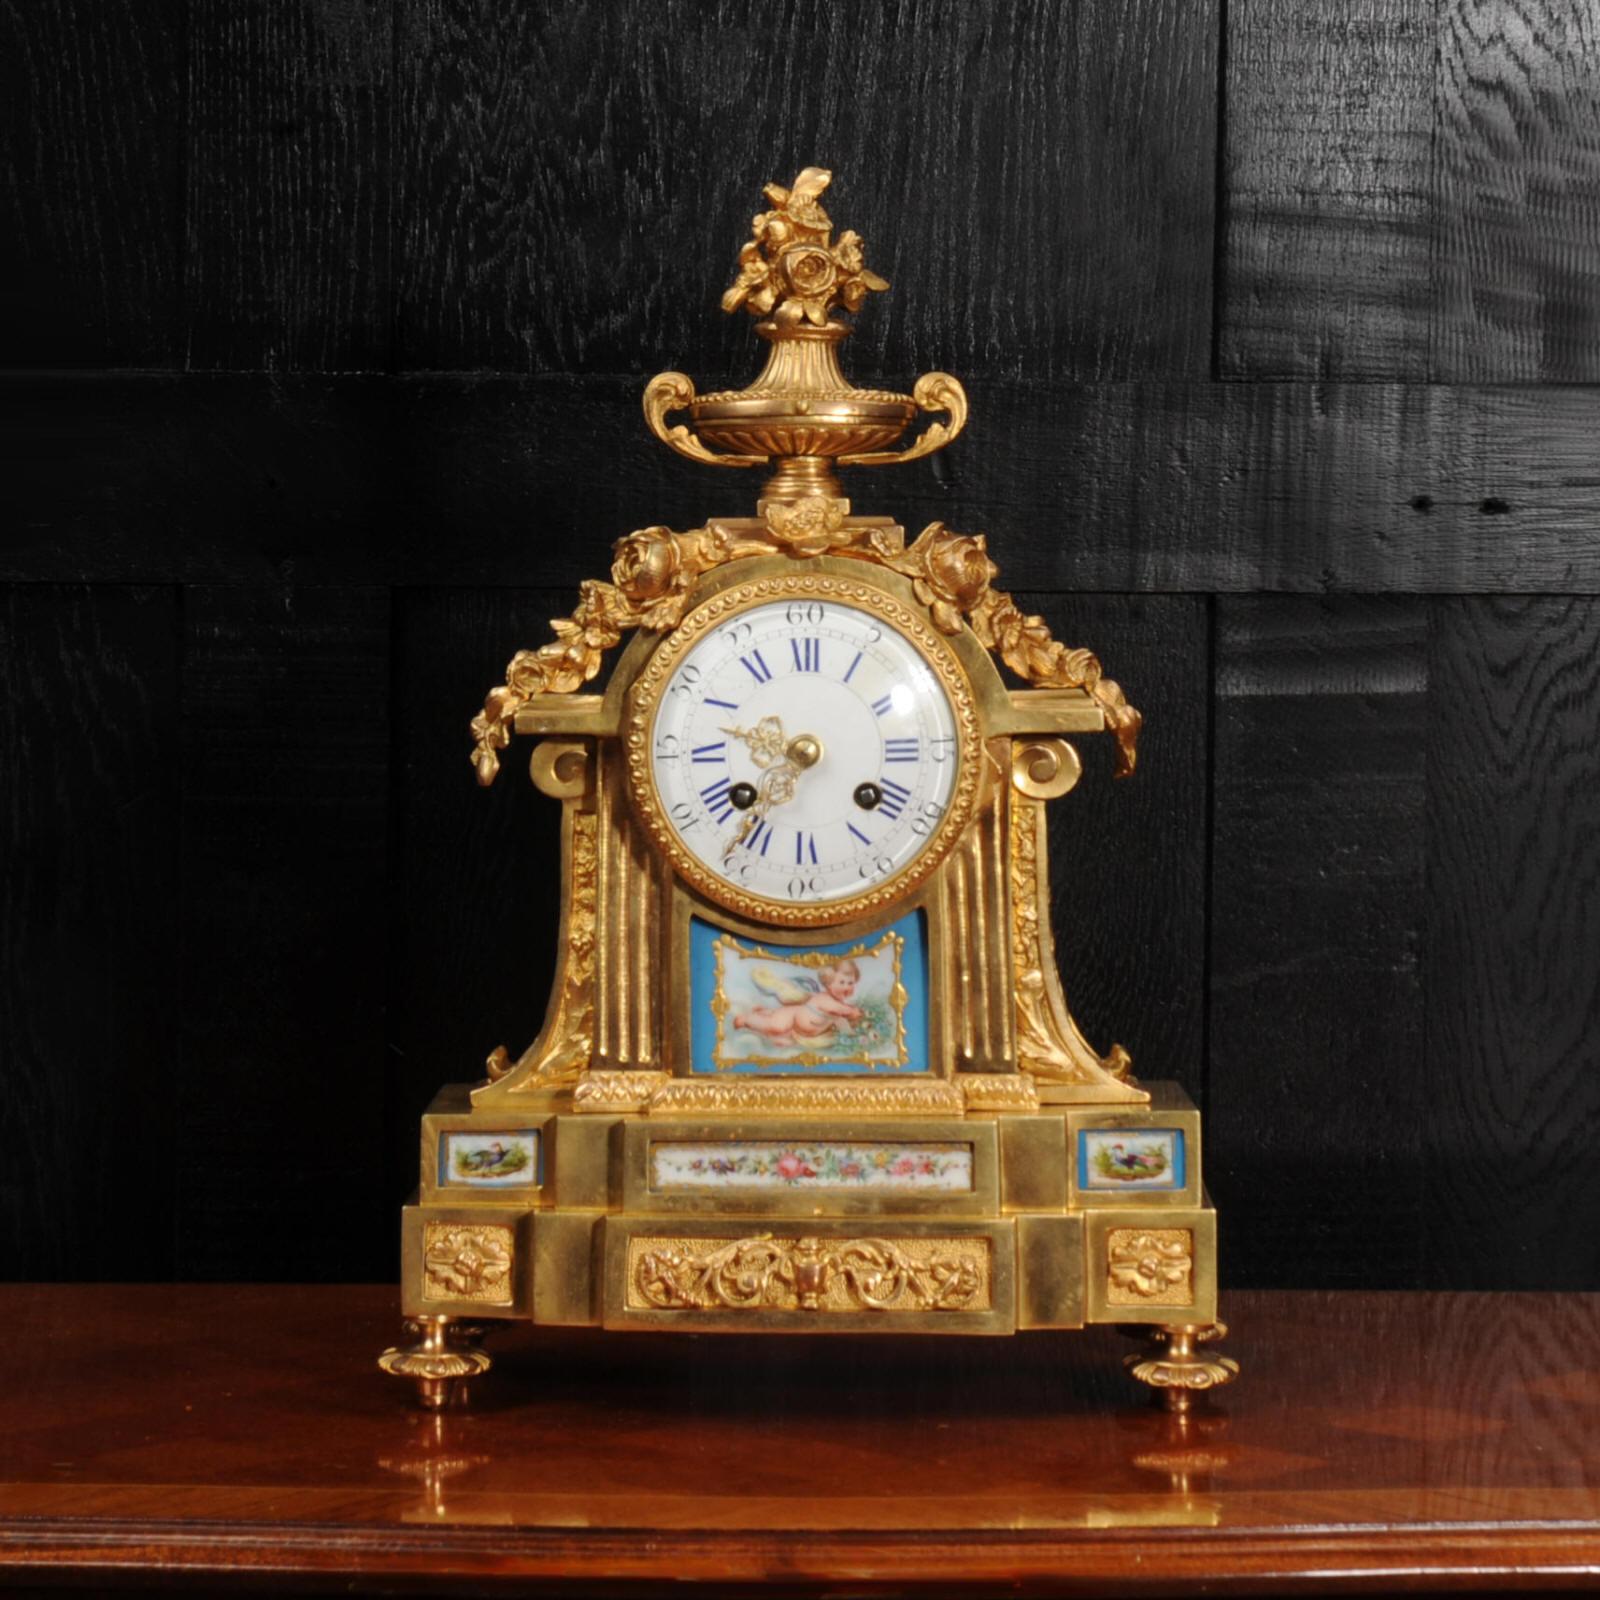 Eine schöne frühe antike französische Ormolu-Uhr von Louis Japy, einem Mitglied der großen Japy-Uhrmacherdynastie. Sie ist im Louis XVI-Stil gehalten und mit exquisiten Porzellanplatten im Sèvres-Stil ausgestattet. Das Porzellan hat einen Grund aus